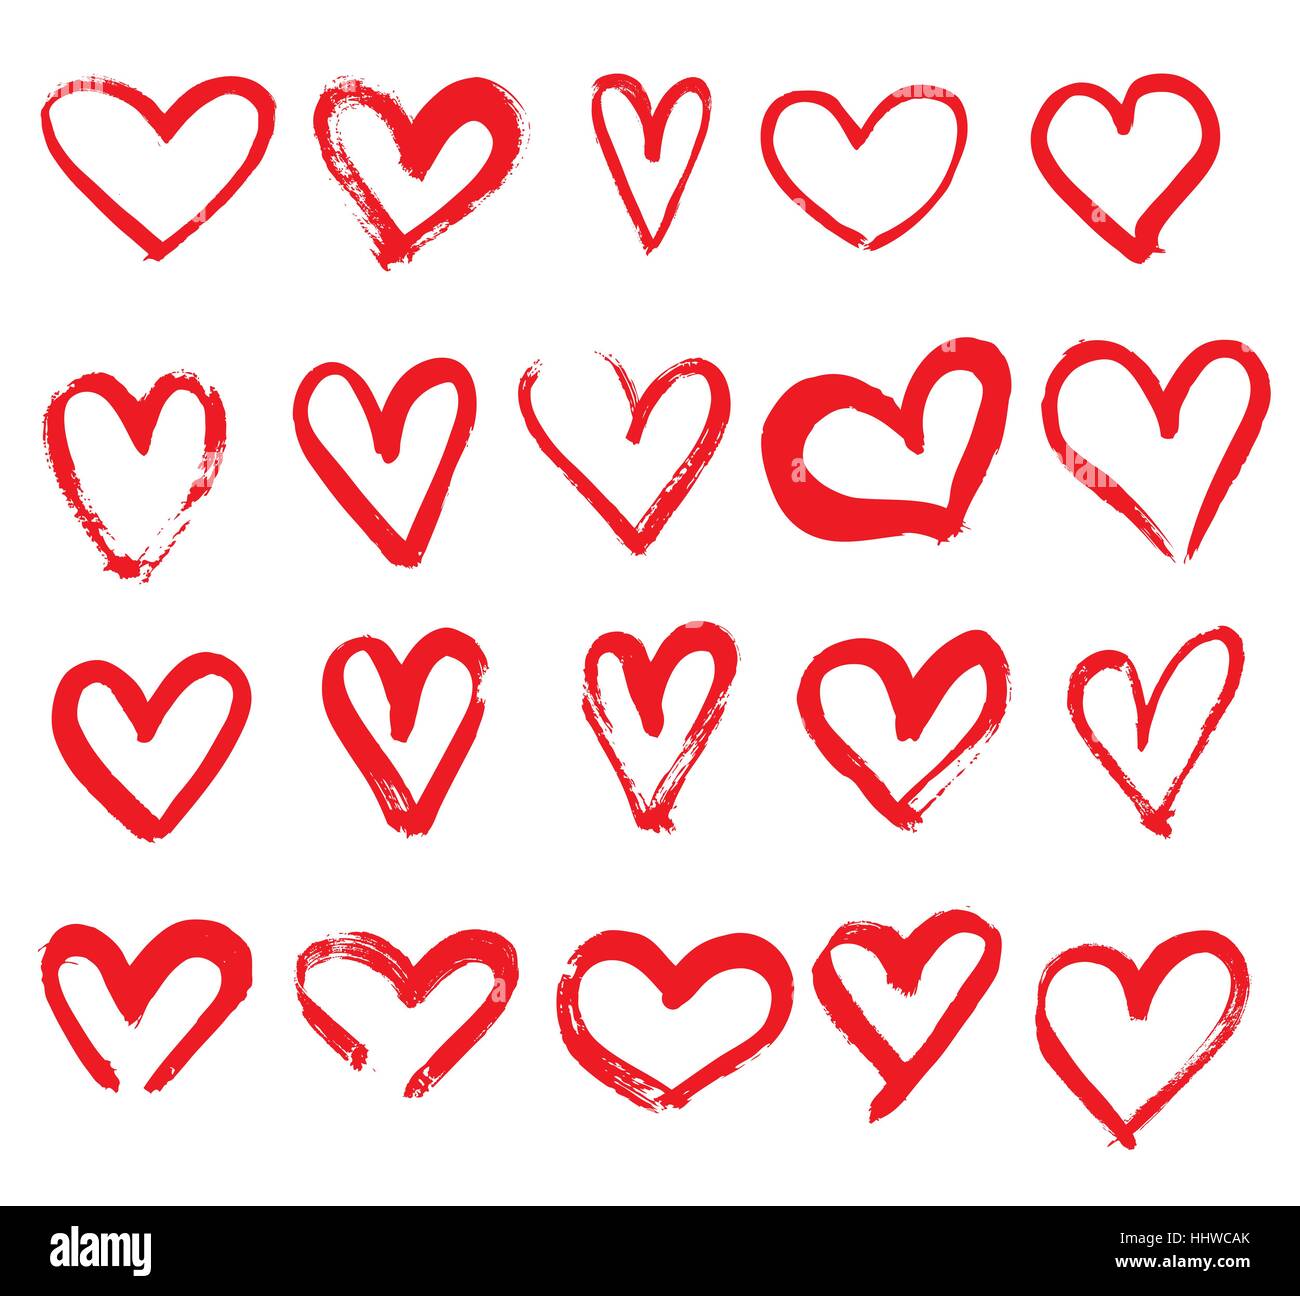 Satz von Hand gezeichnete Herzen. Rote Farbe. Vektor-Illustration. Stock Vektor